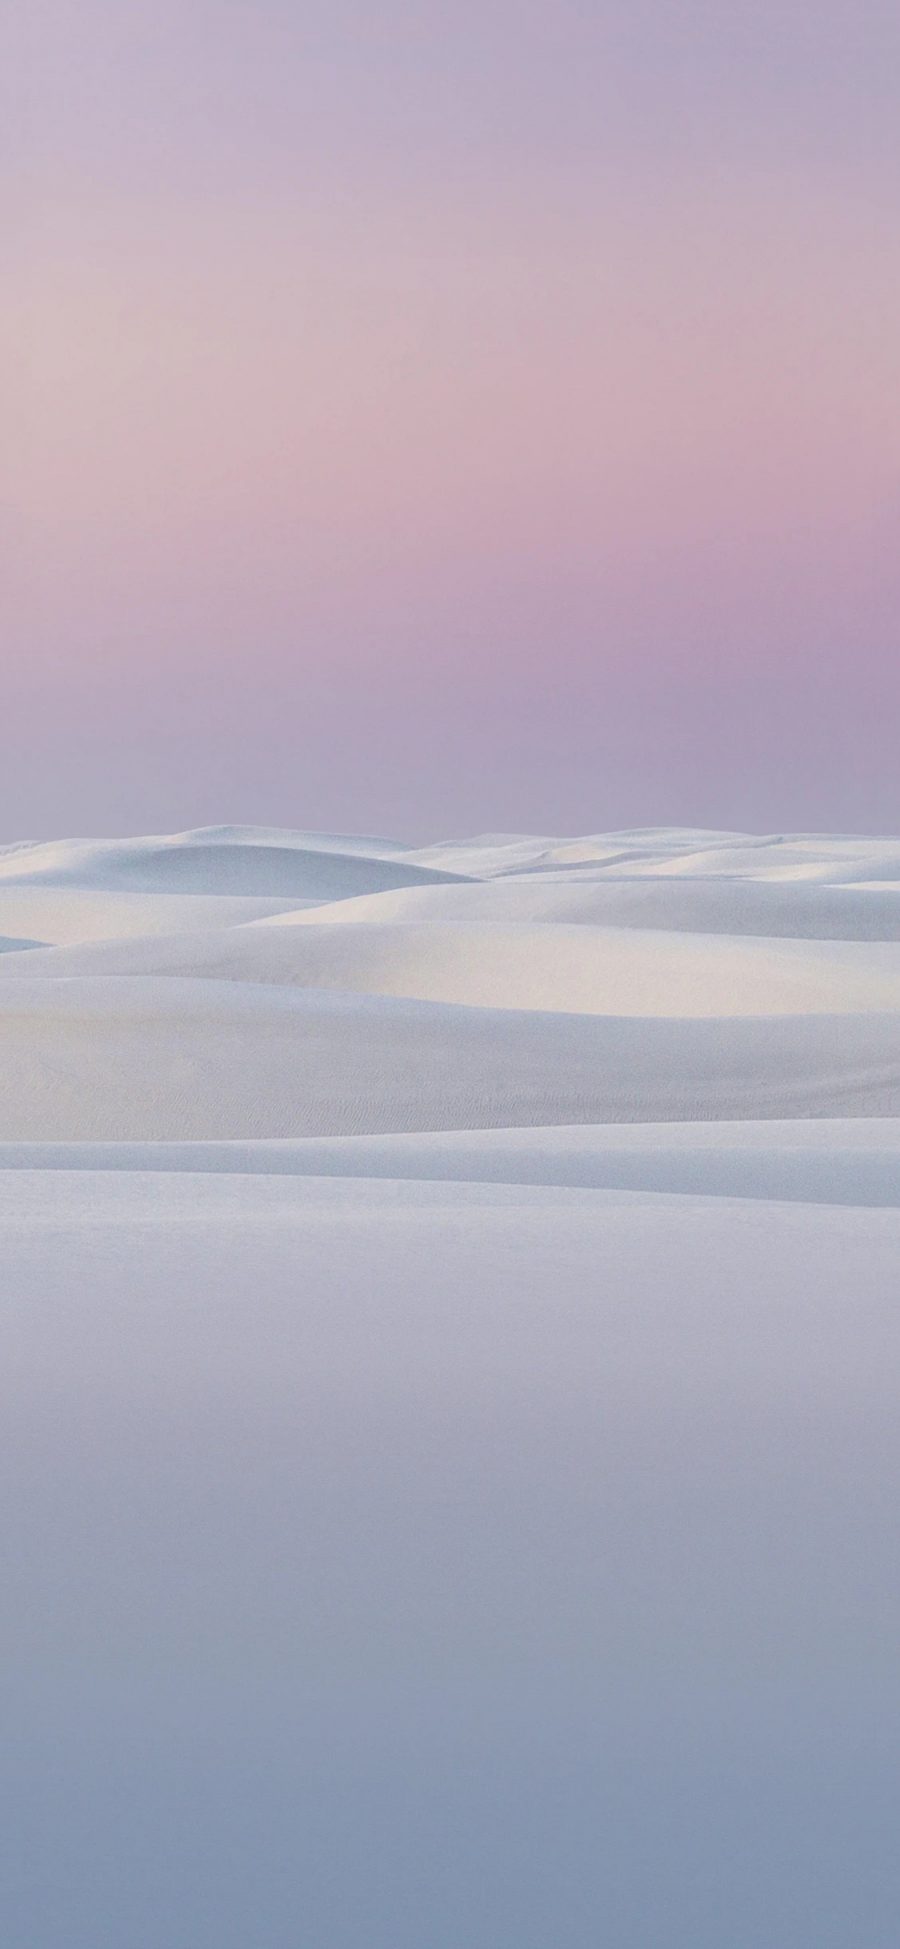 [2436×1125]沙漠 荒漠 线条 紫色 渐变 苹果手机壁纸图片